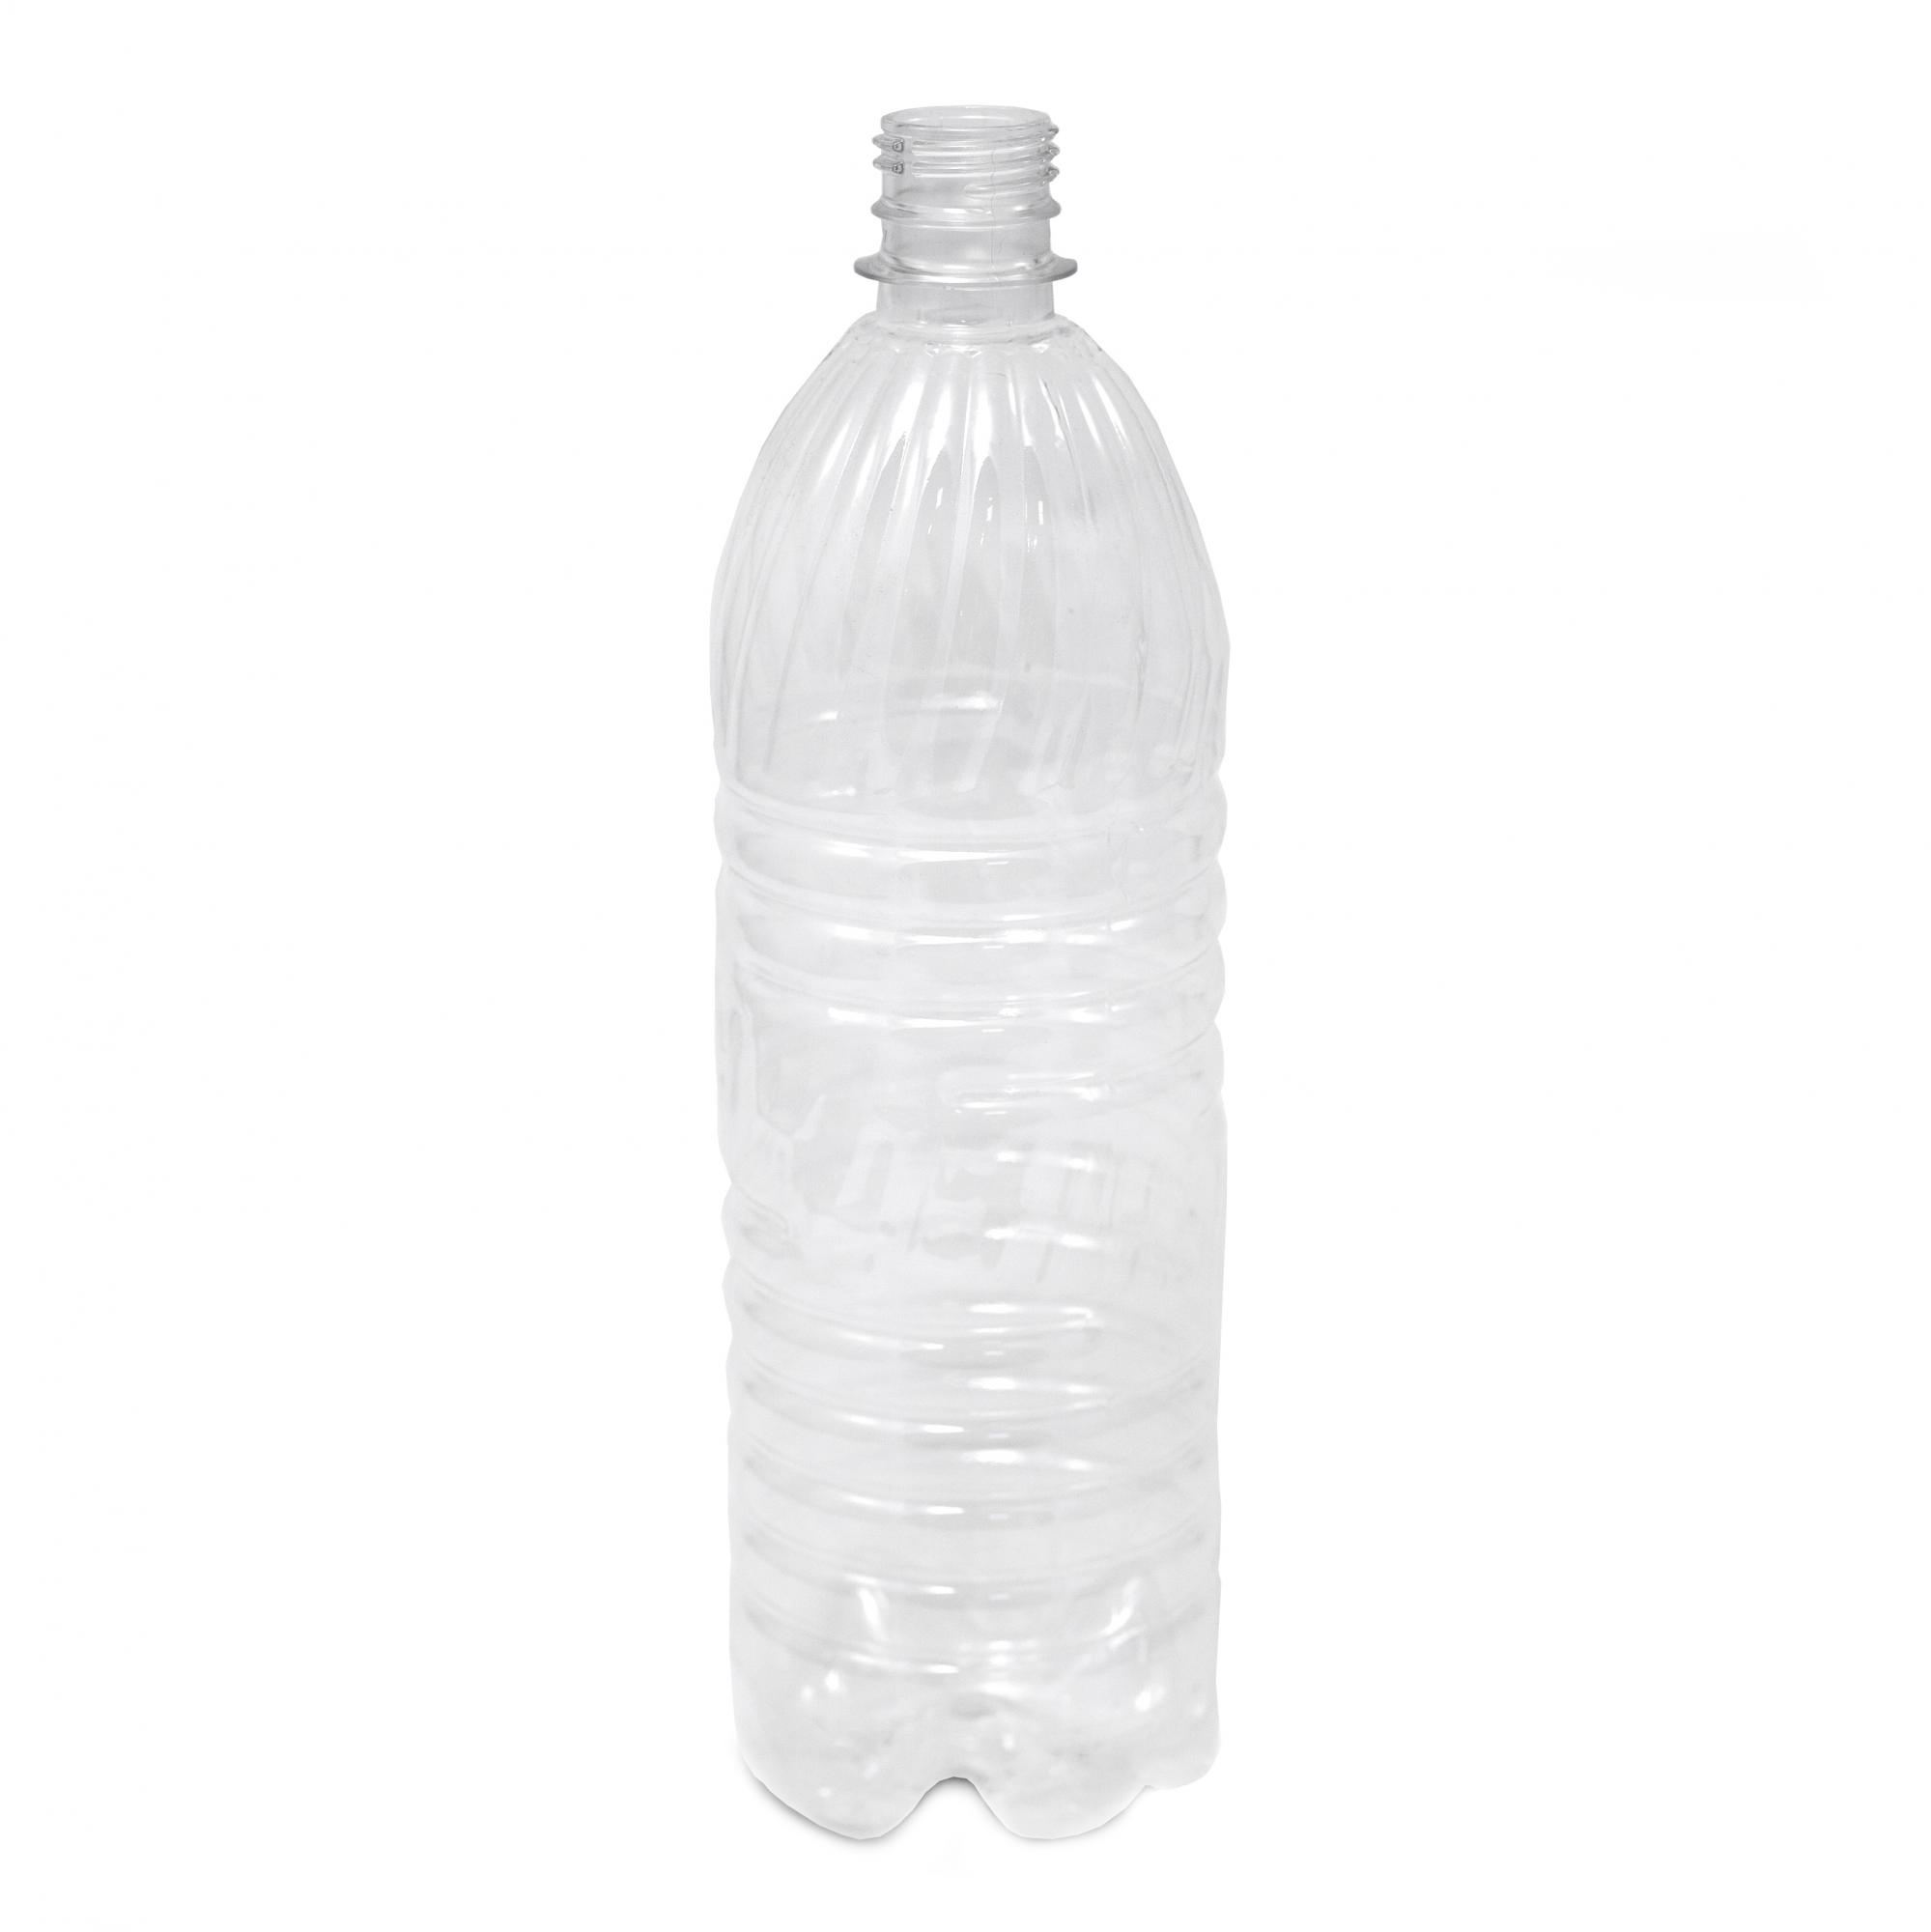 Бутылка 1л пэт. Д=28мм бутылка ПЭТ 1л с крышкой прозрачная (х60) Росси. Бутылка ПЭТ 5л горло 47мм. ПЭТ бутылка емк. 0,1л. Прозр. Горло 28 с крышкой. Бутылка ПЭТ 1,0 Л (500 шт) "купол" d-28 мм.